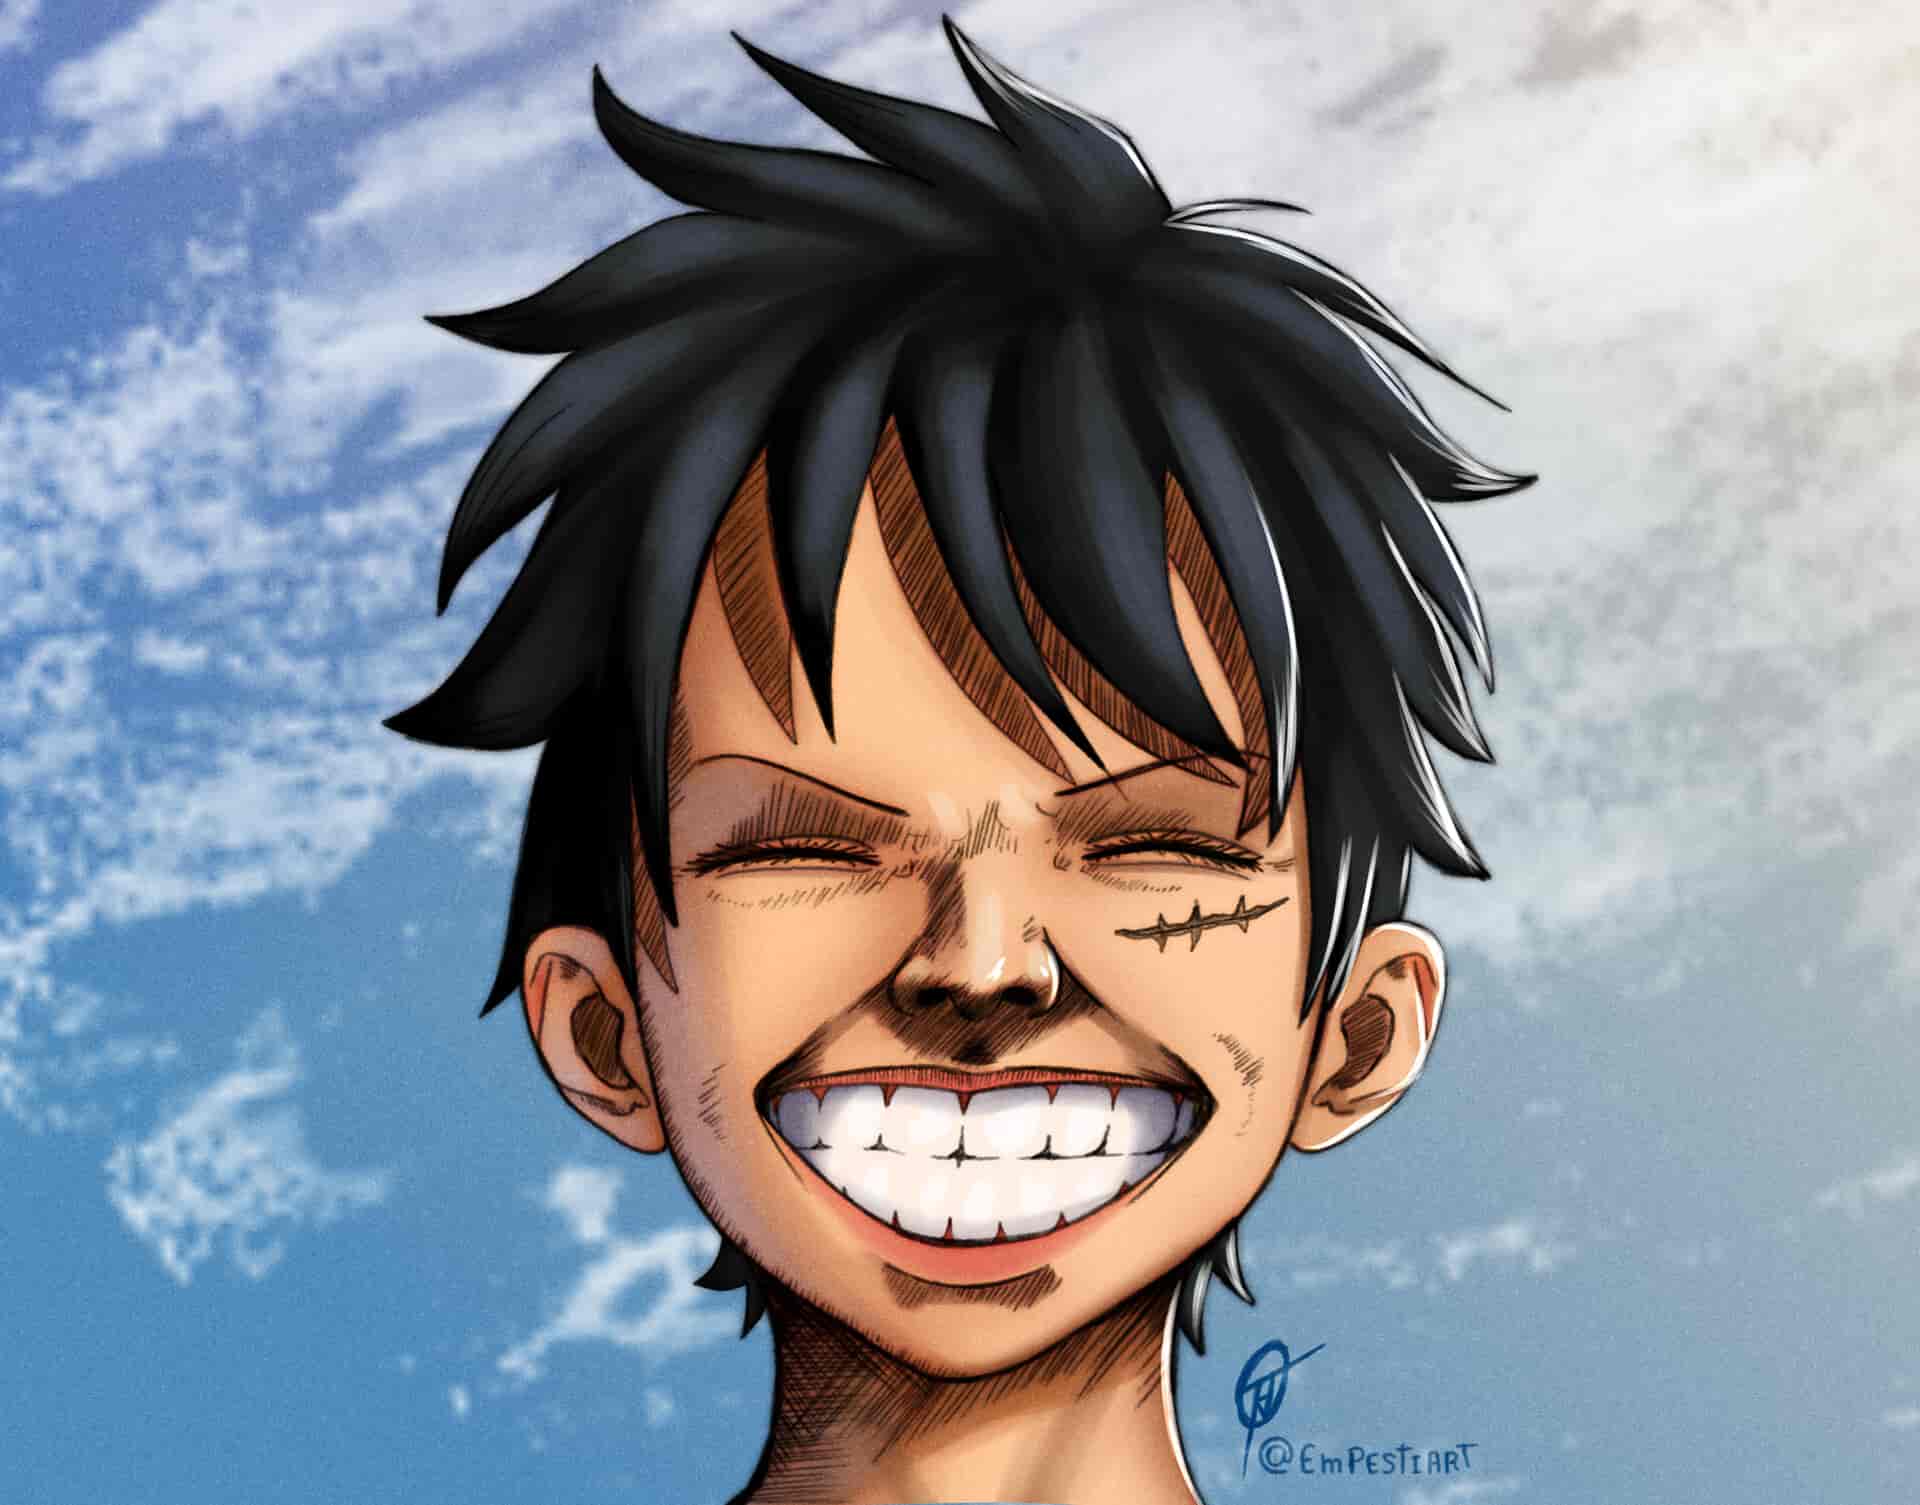 Luffy cười: Luffy luôn làm cho chúng ta cười và cảm thấy hạnh phúc. Hãy xem hình ảnh Luffy đang cười thật tươi để cảm nhận được niềm vui của anh ta. Những nụ cười này làm nên những khoảnh khắc đáng nhớ trong One Piece.